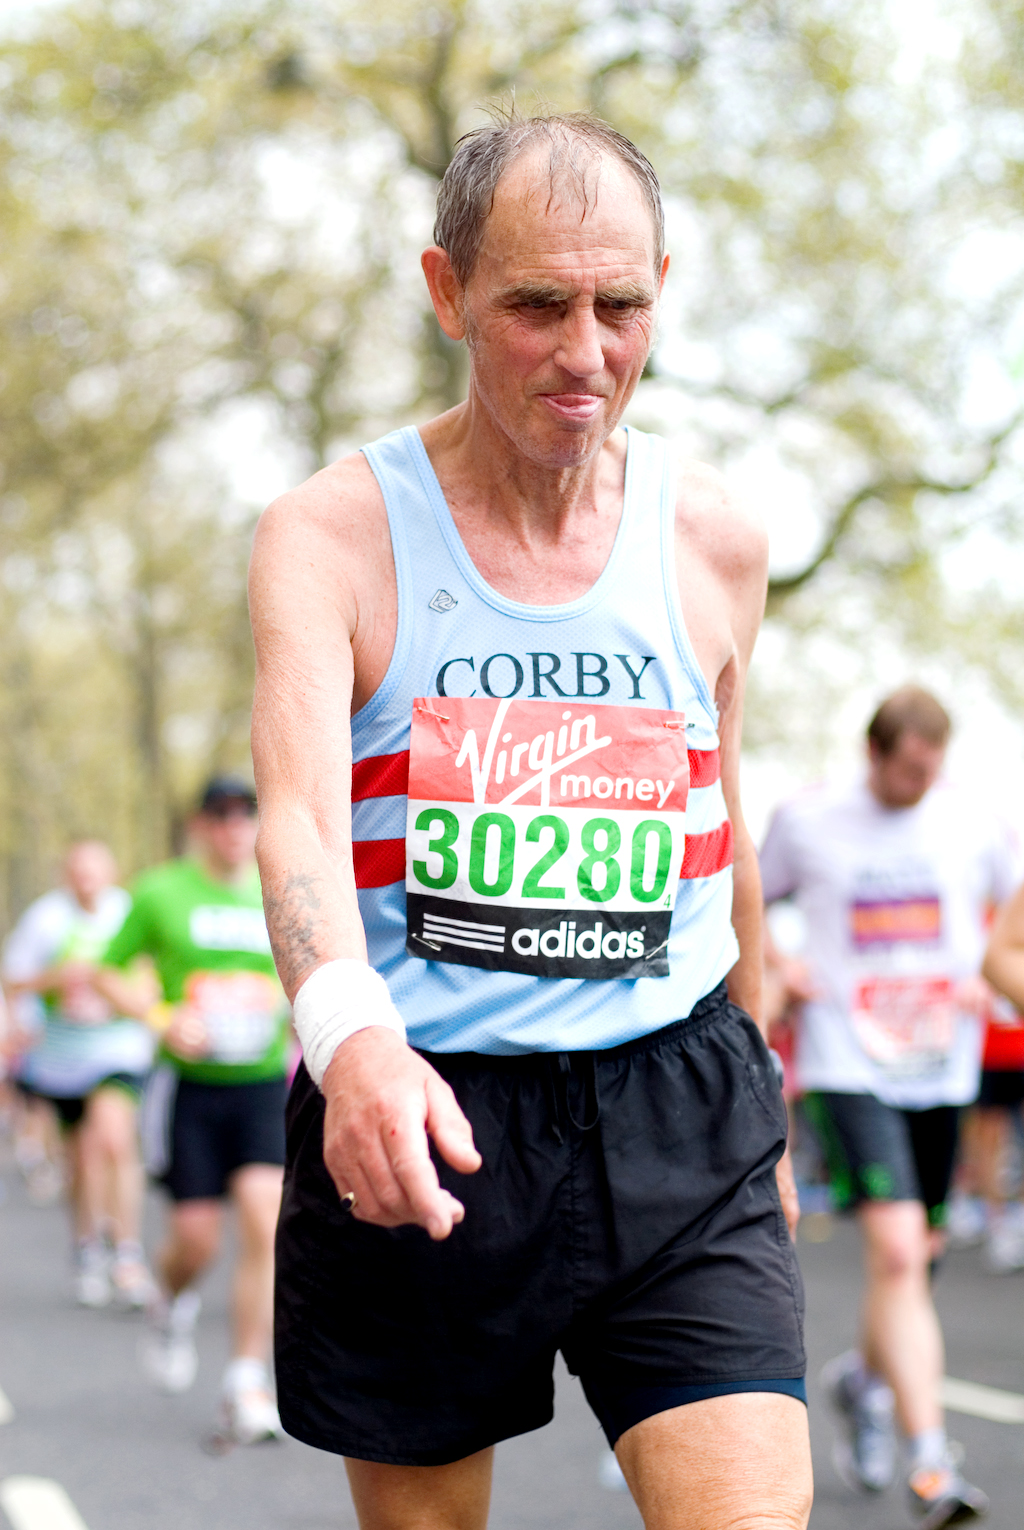  London Marathon 2011 - Mile 24.75 